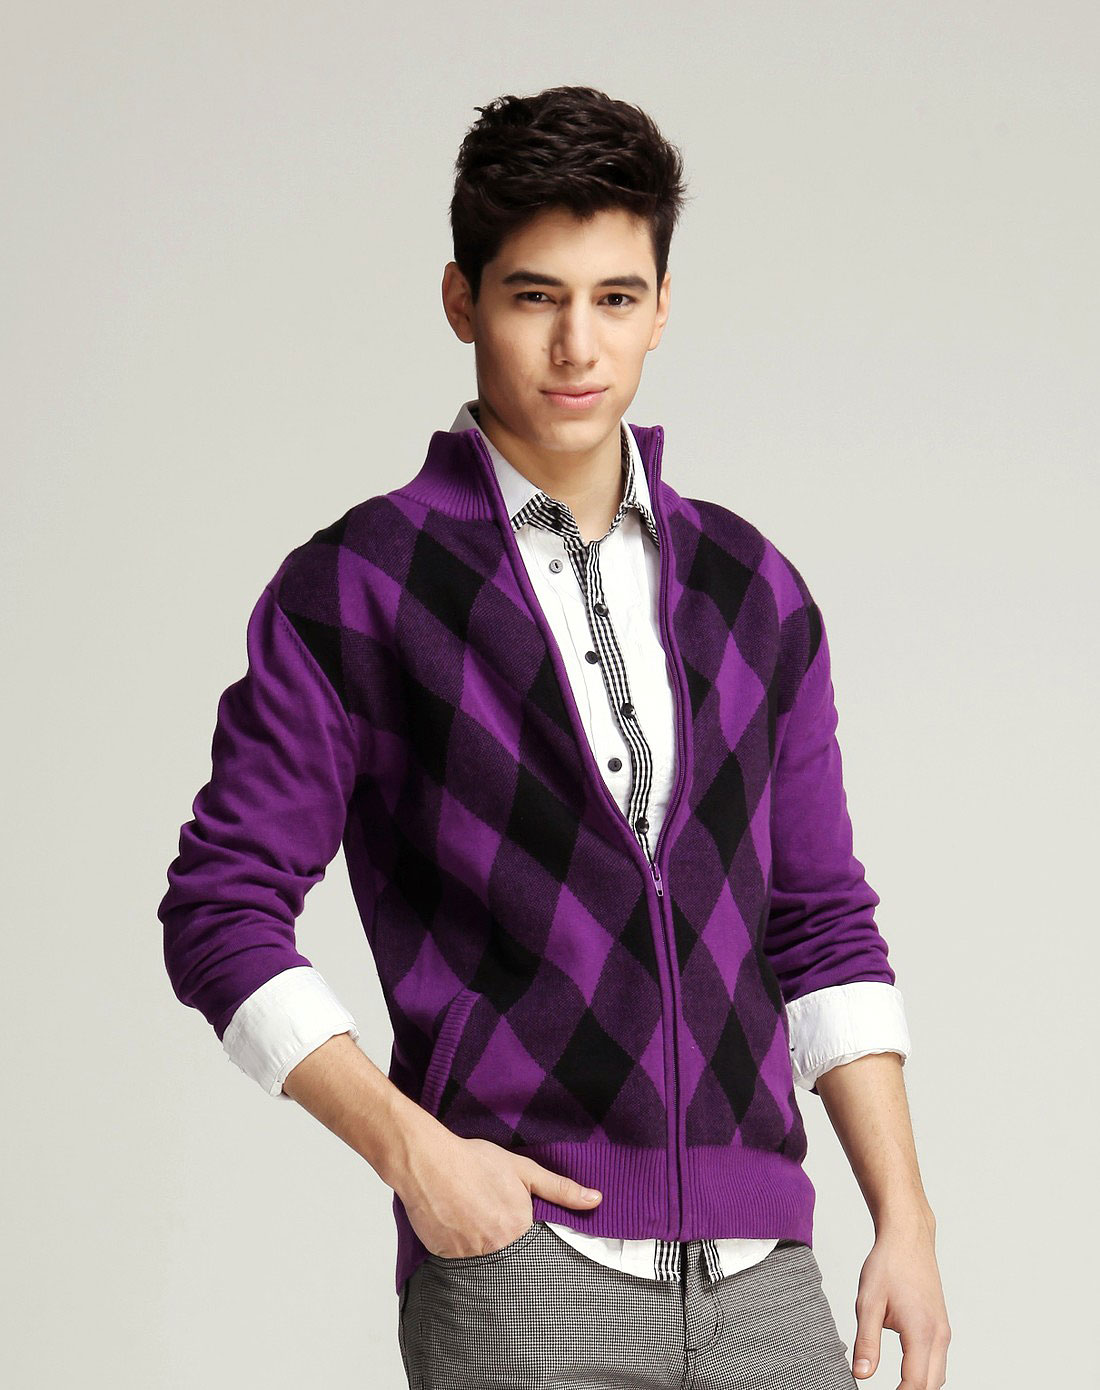 男士紫色毛衣怎么搭配图片